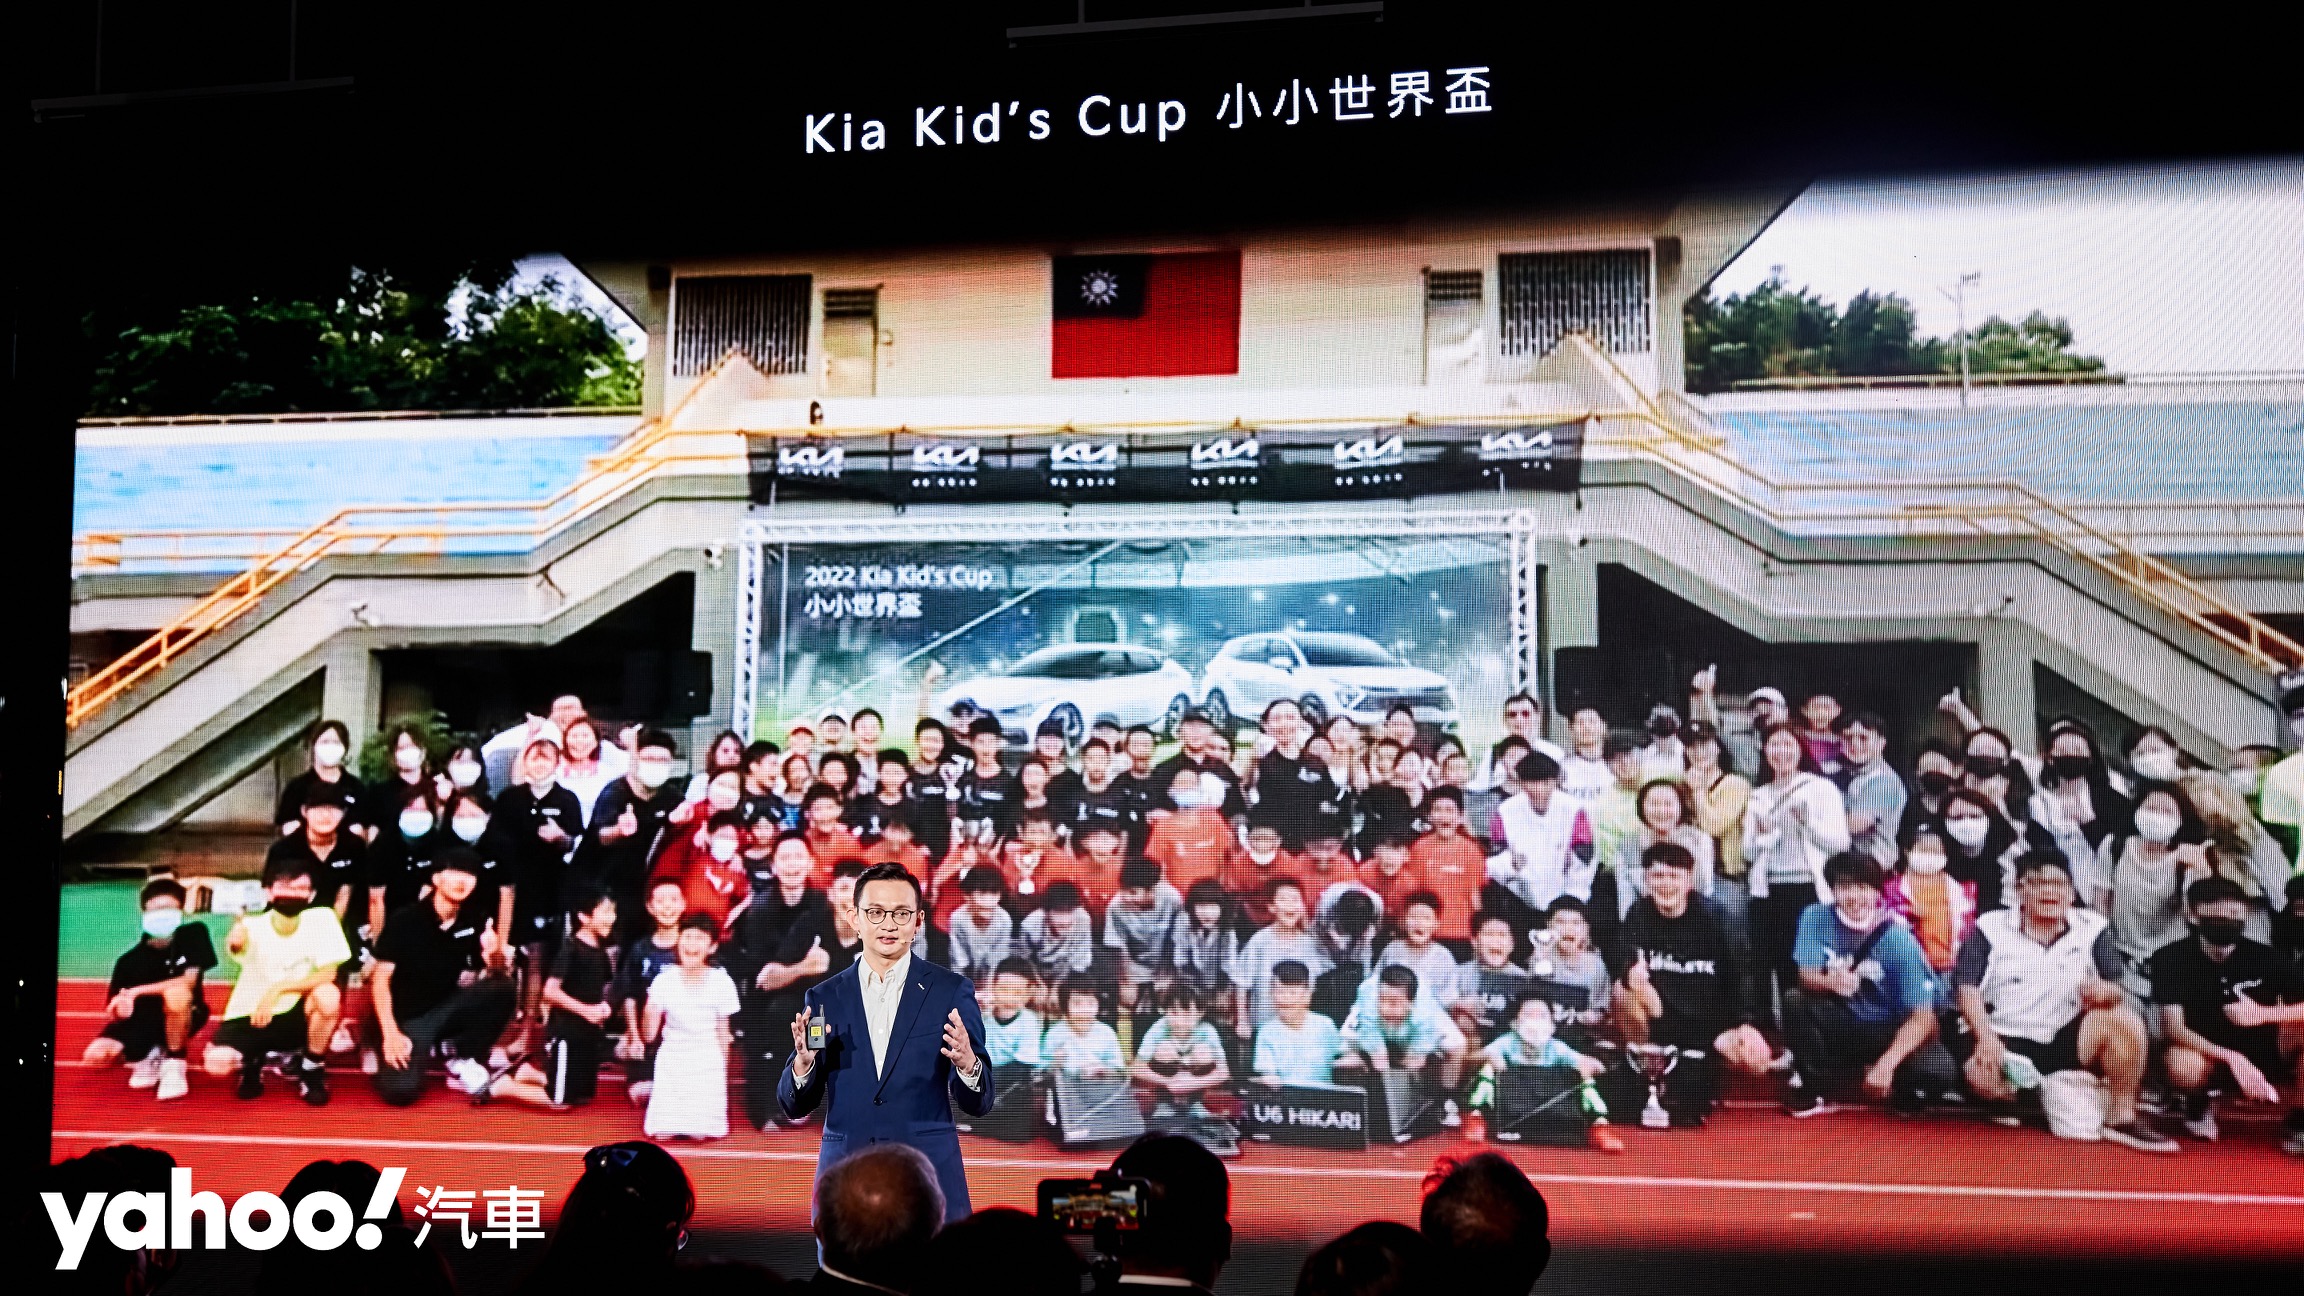 不僅投入頂級賽事的贊助，Kia同時也為基層運動努力耕耘並舉辦Kia Kid’s Cup小小世界盃。